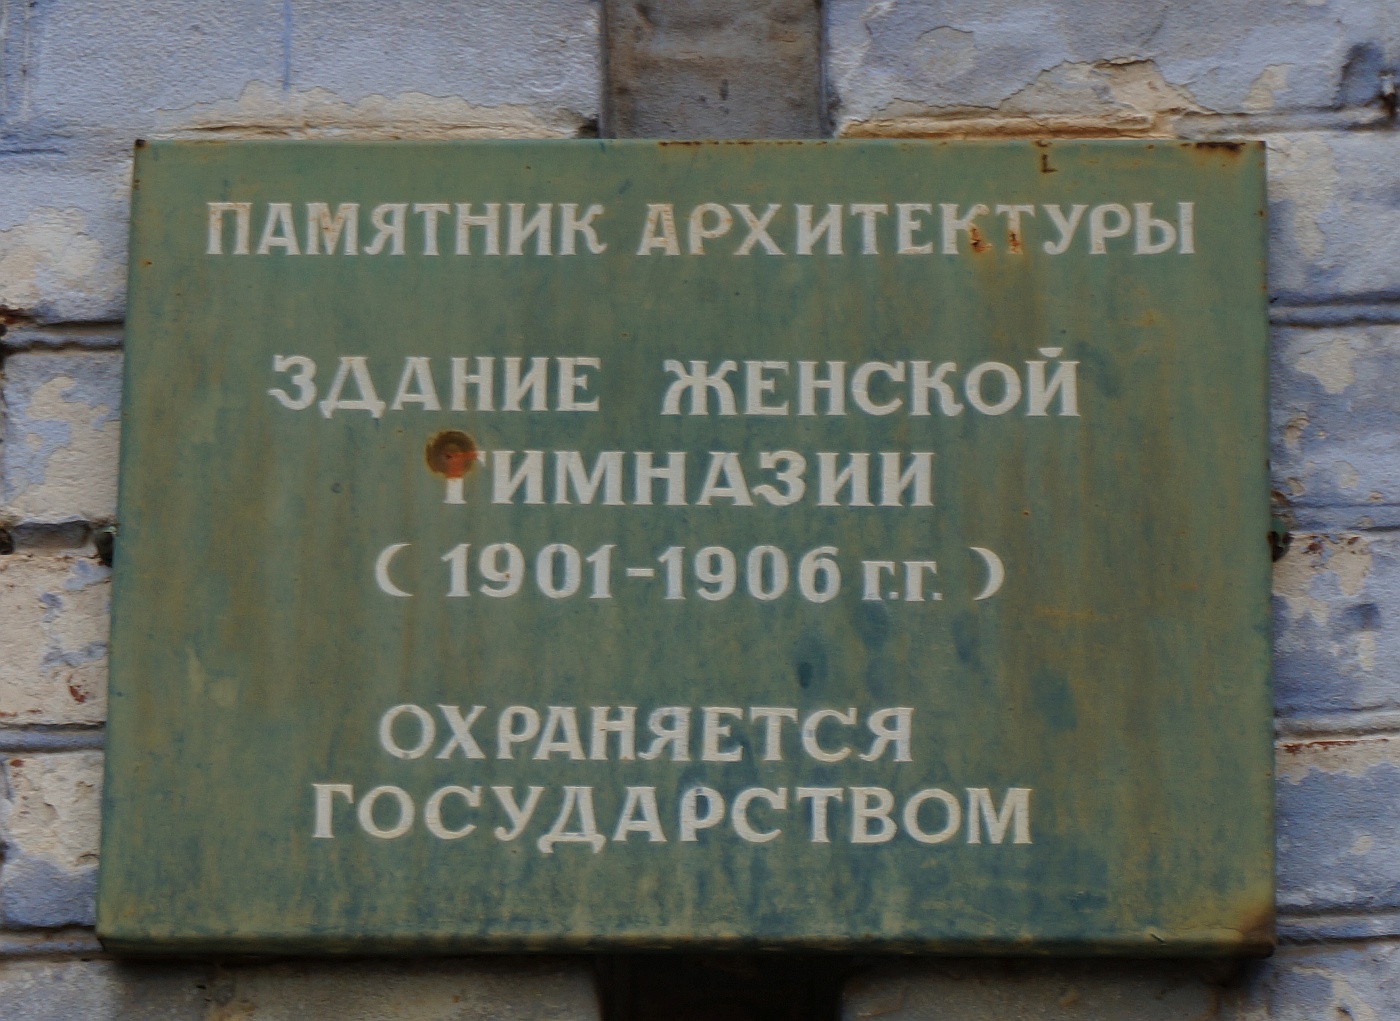 Osa, Улица Свердлова, 7. Osa — Security signs